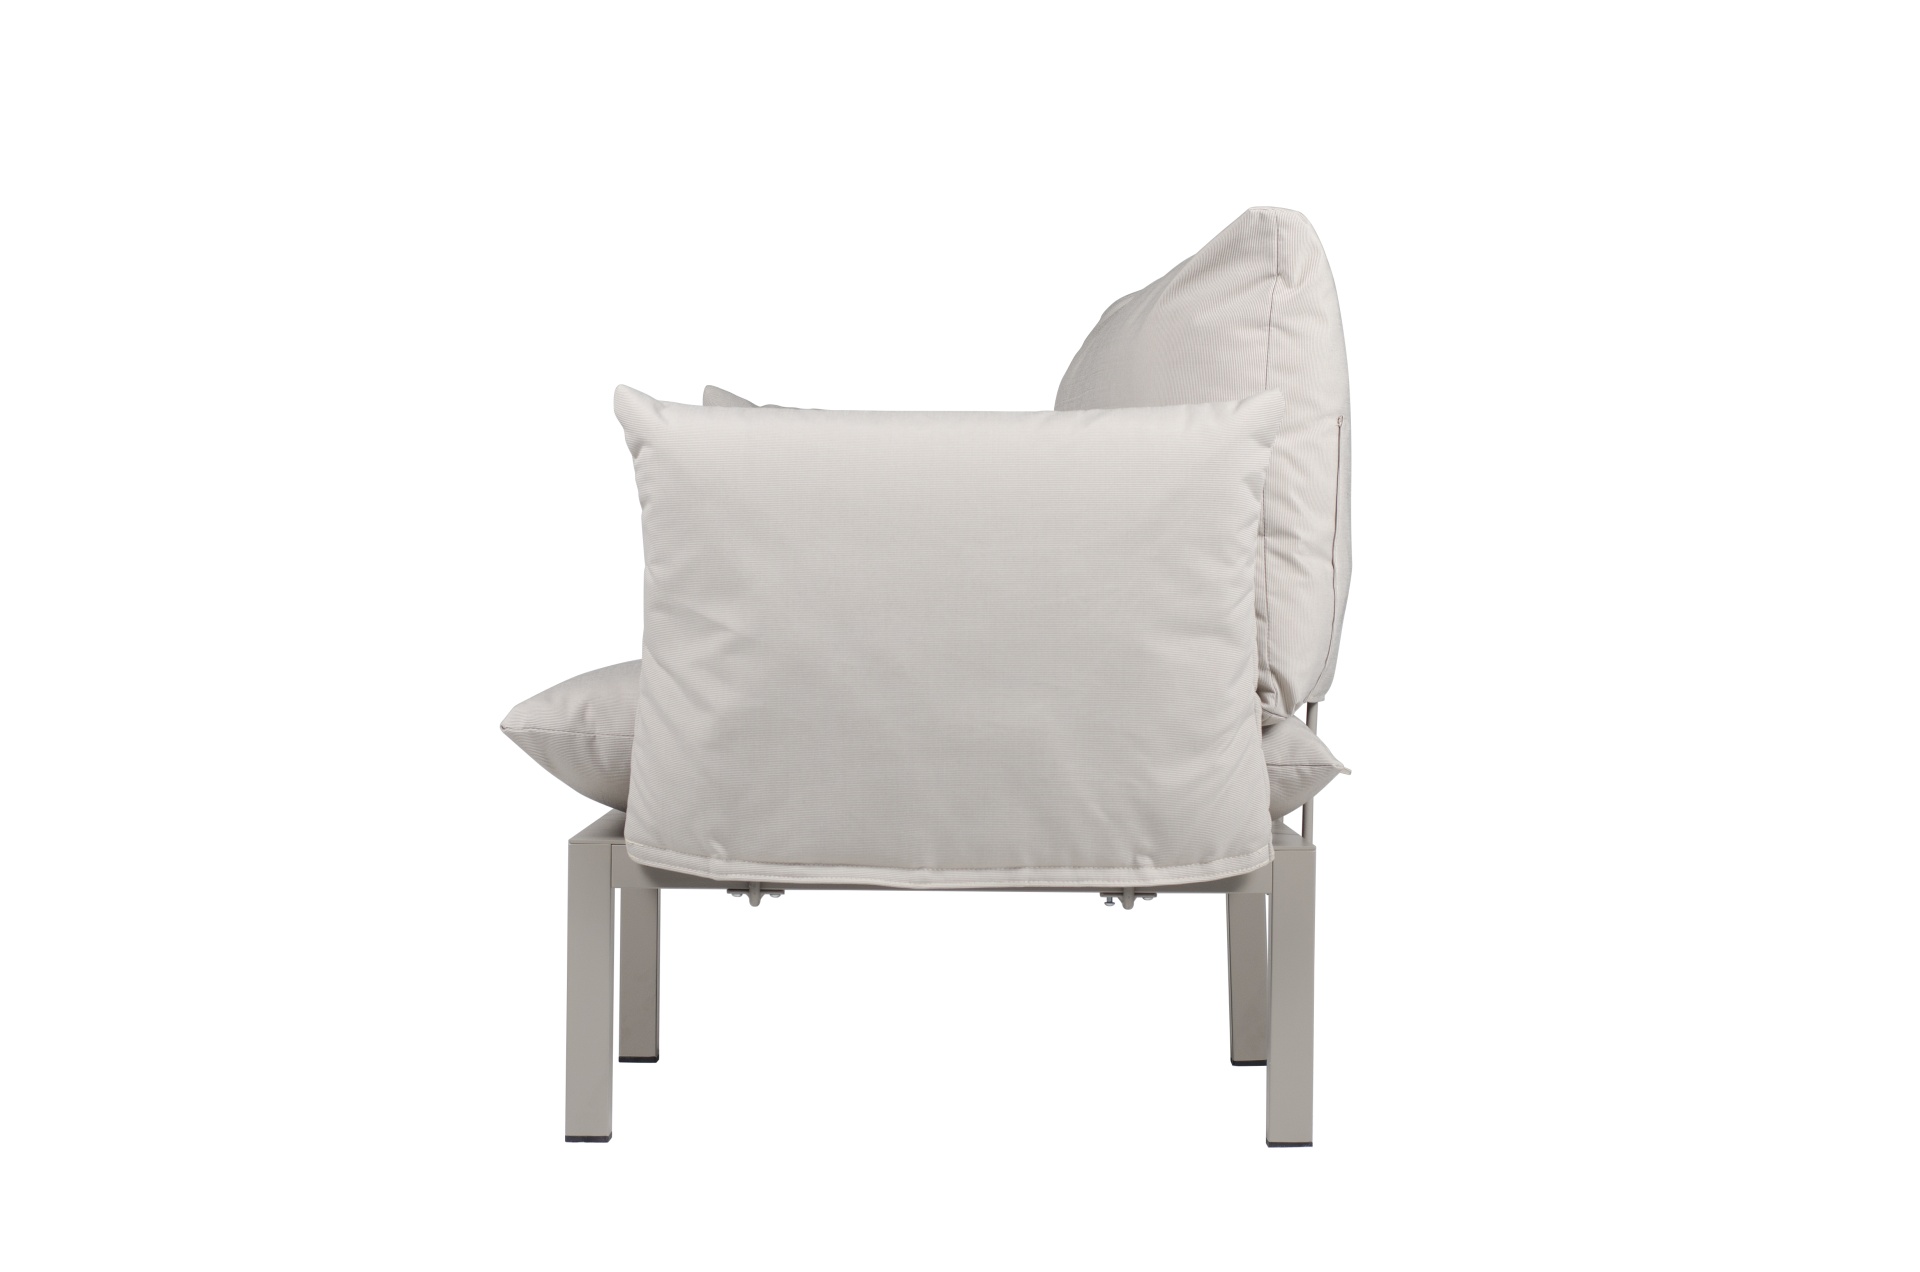 Der moderne Sessel Domino überzeugt mit seinem modernen Design. Er verfügt über ein Aluminium Gestell und ist somit perfekt für den Outdoor-Bereich einsetzbar. Designet wurde er von der Marke Jan Kurtz. Und hat die Farbkombination Gestell weiß und Bezug W